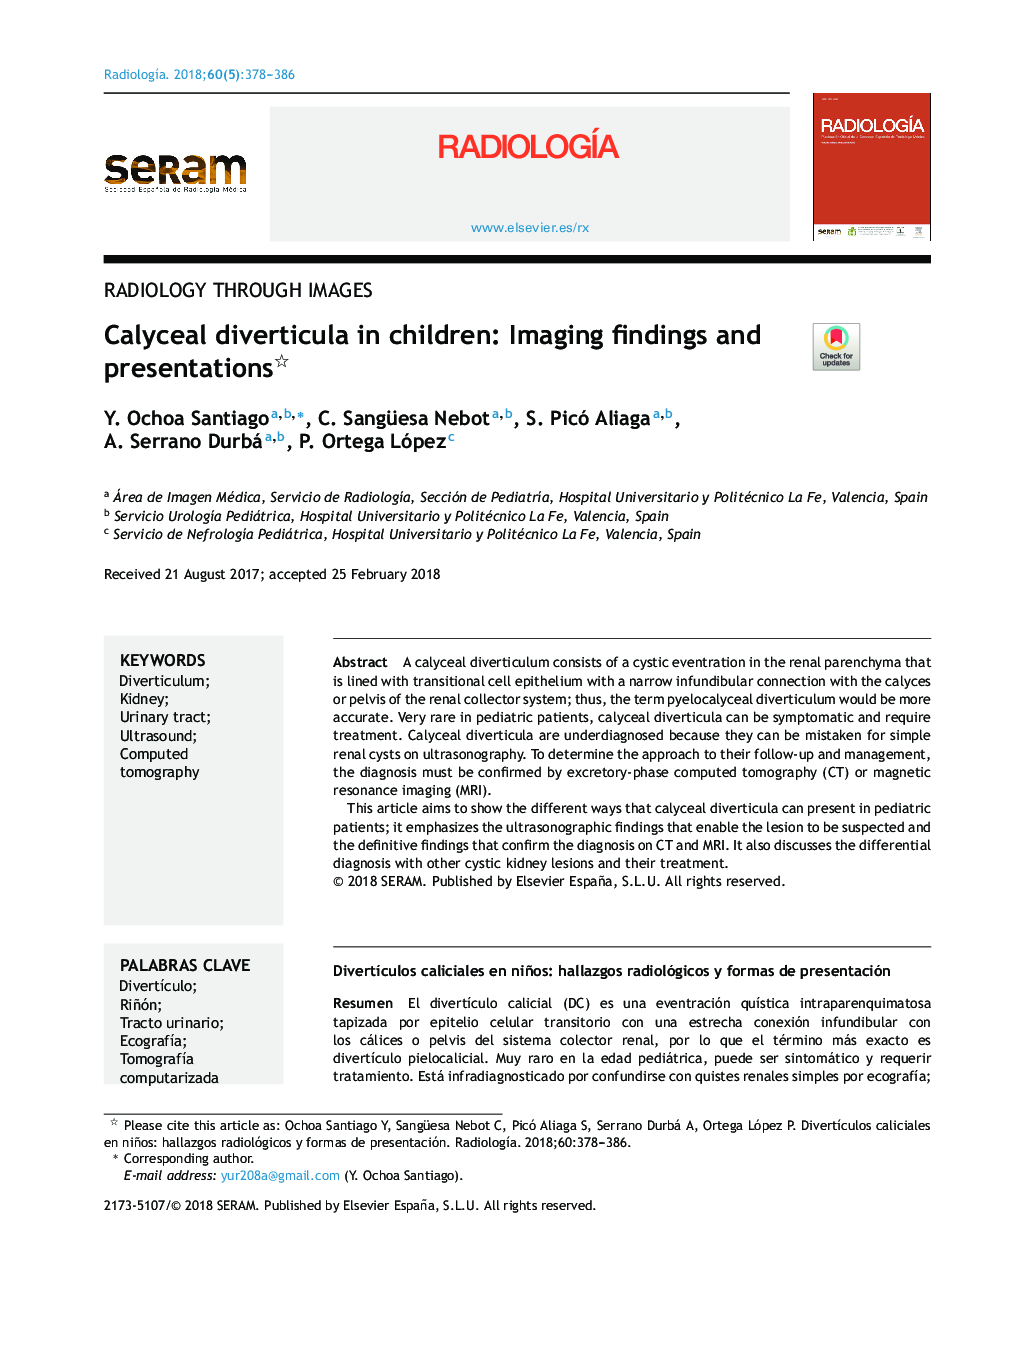 دیورتیکولا کالیسیال در کودکان: یافته های تصویربرداری و ارائه